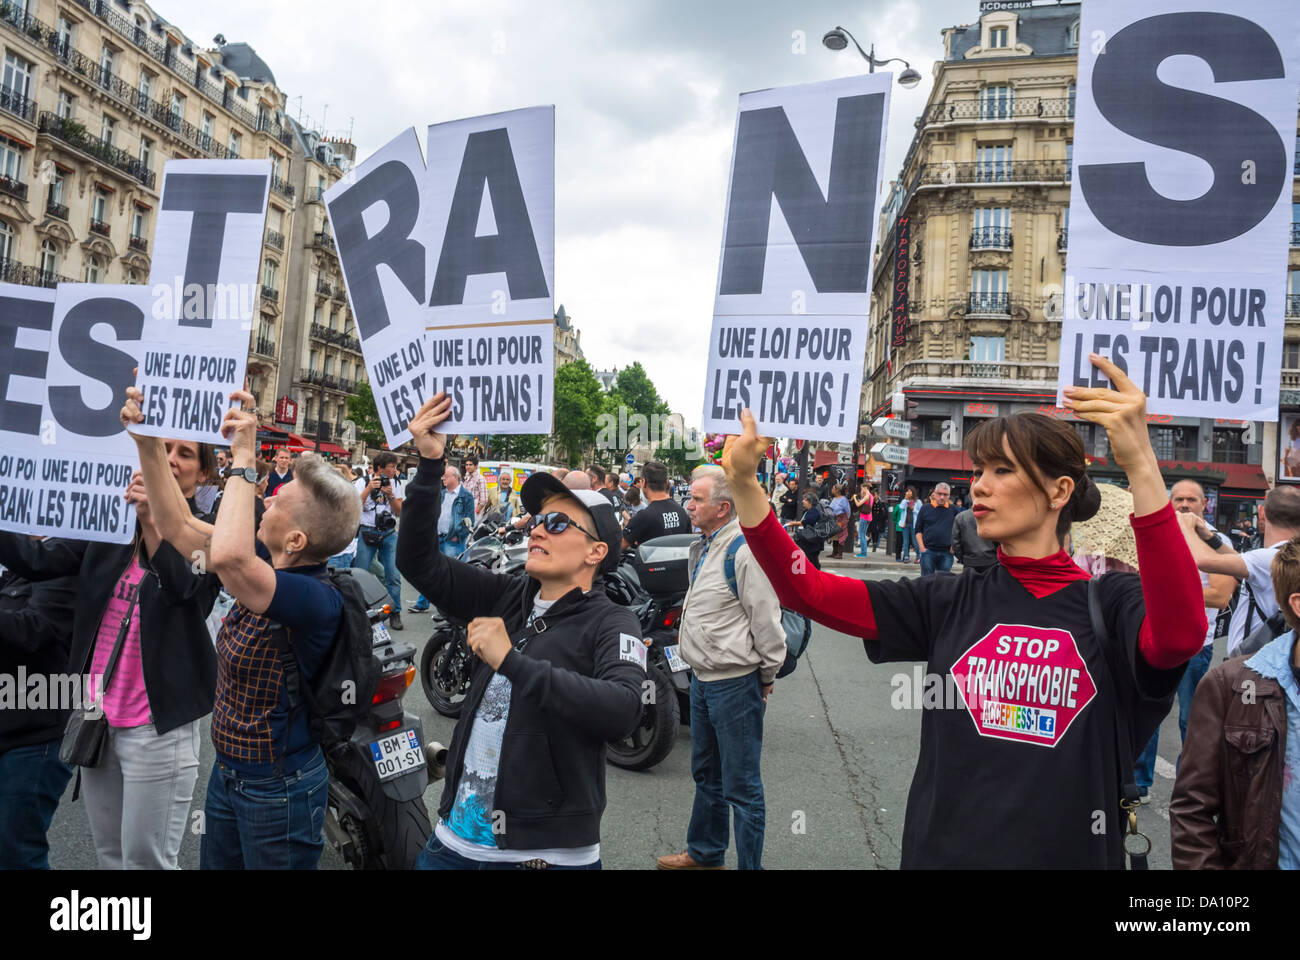 Paris, France, activisme LGBT, groupes tenant des panneaux de protestation, dans la parade annuelle de la fierté LGBT, Organisation protestant pour les droits des transgenres, manifestation pour les droits des personnes trans, droits des femmes, marche de la fierté gay, protestataires pour les droits, contre la transphobie homophobe Banque D'Images